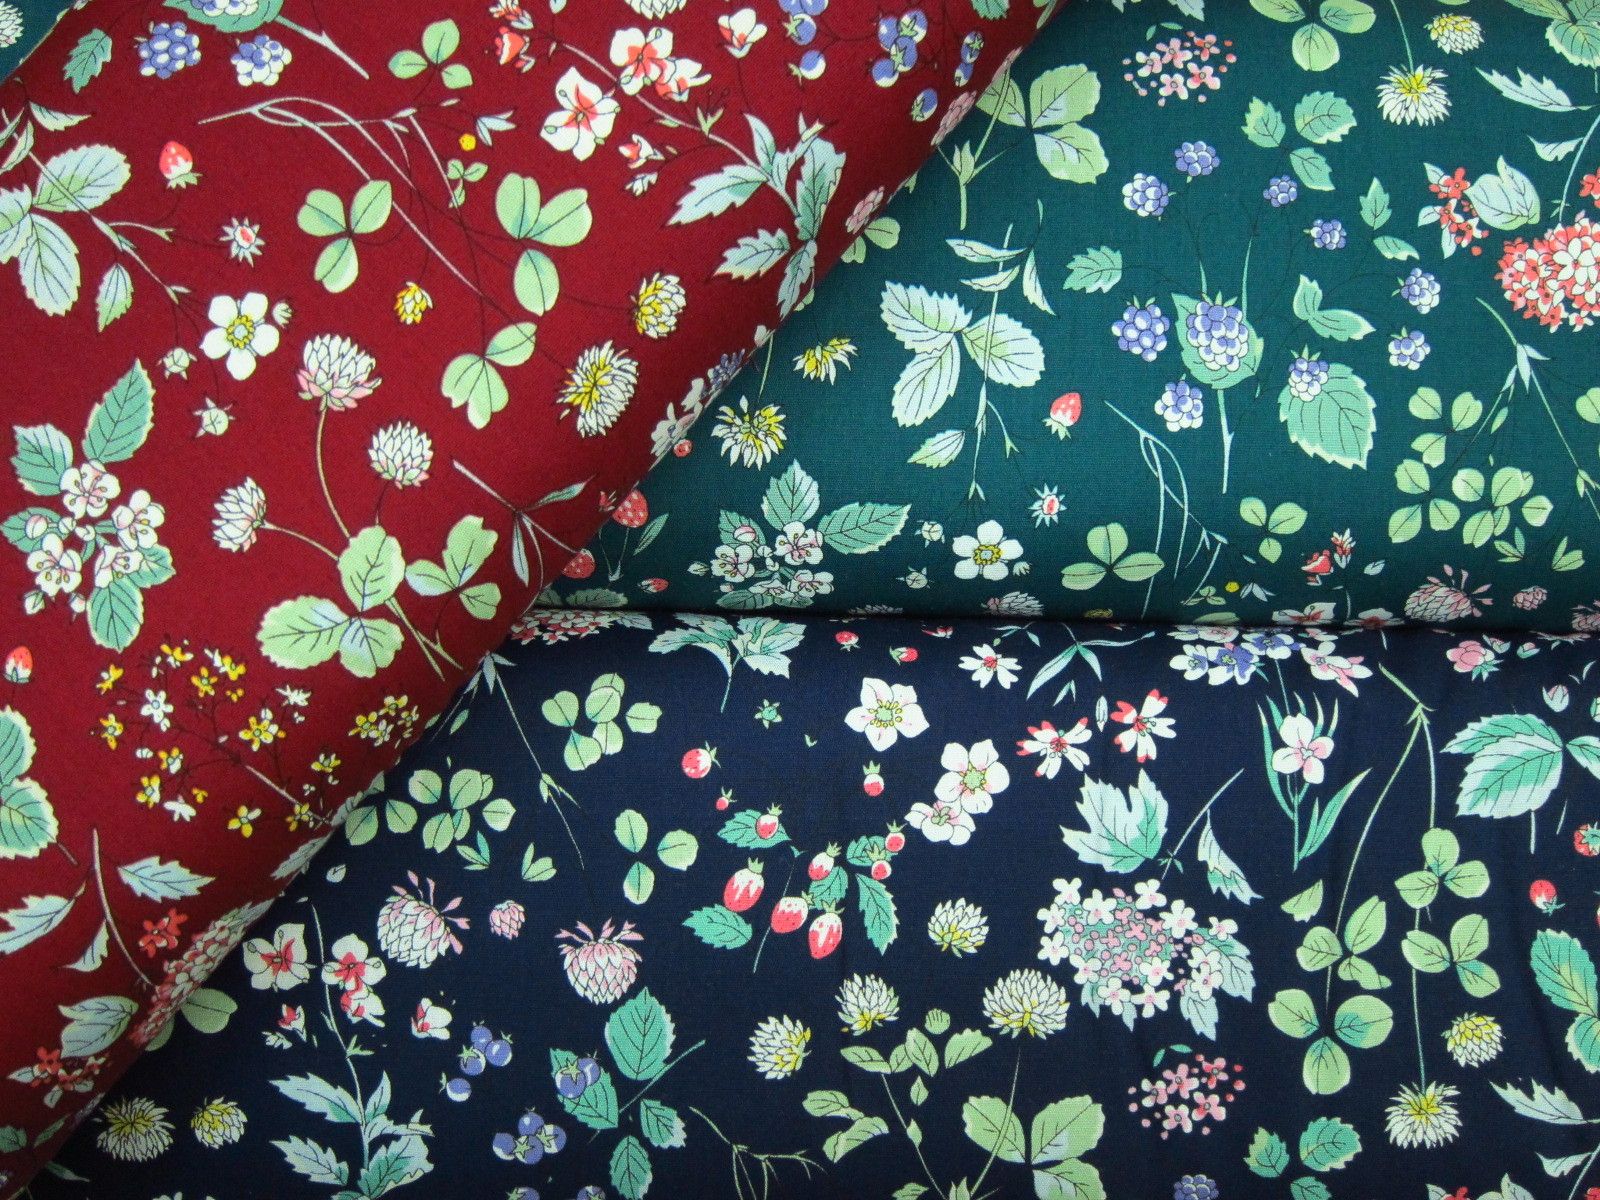 台灣製平織綿布-莓果花-酒紅底、綠底、深藍底-100%純綿、台灣製造